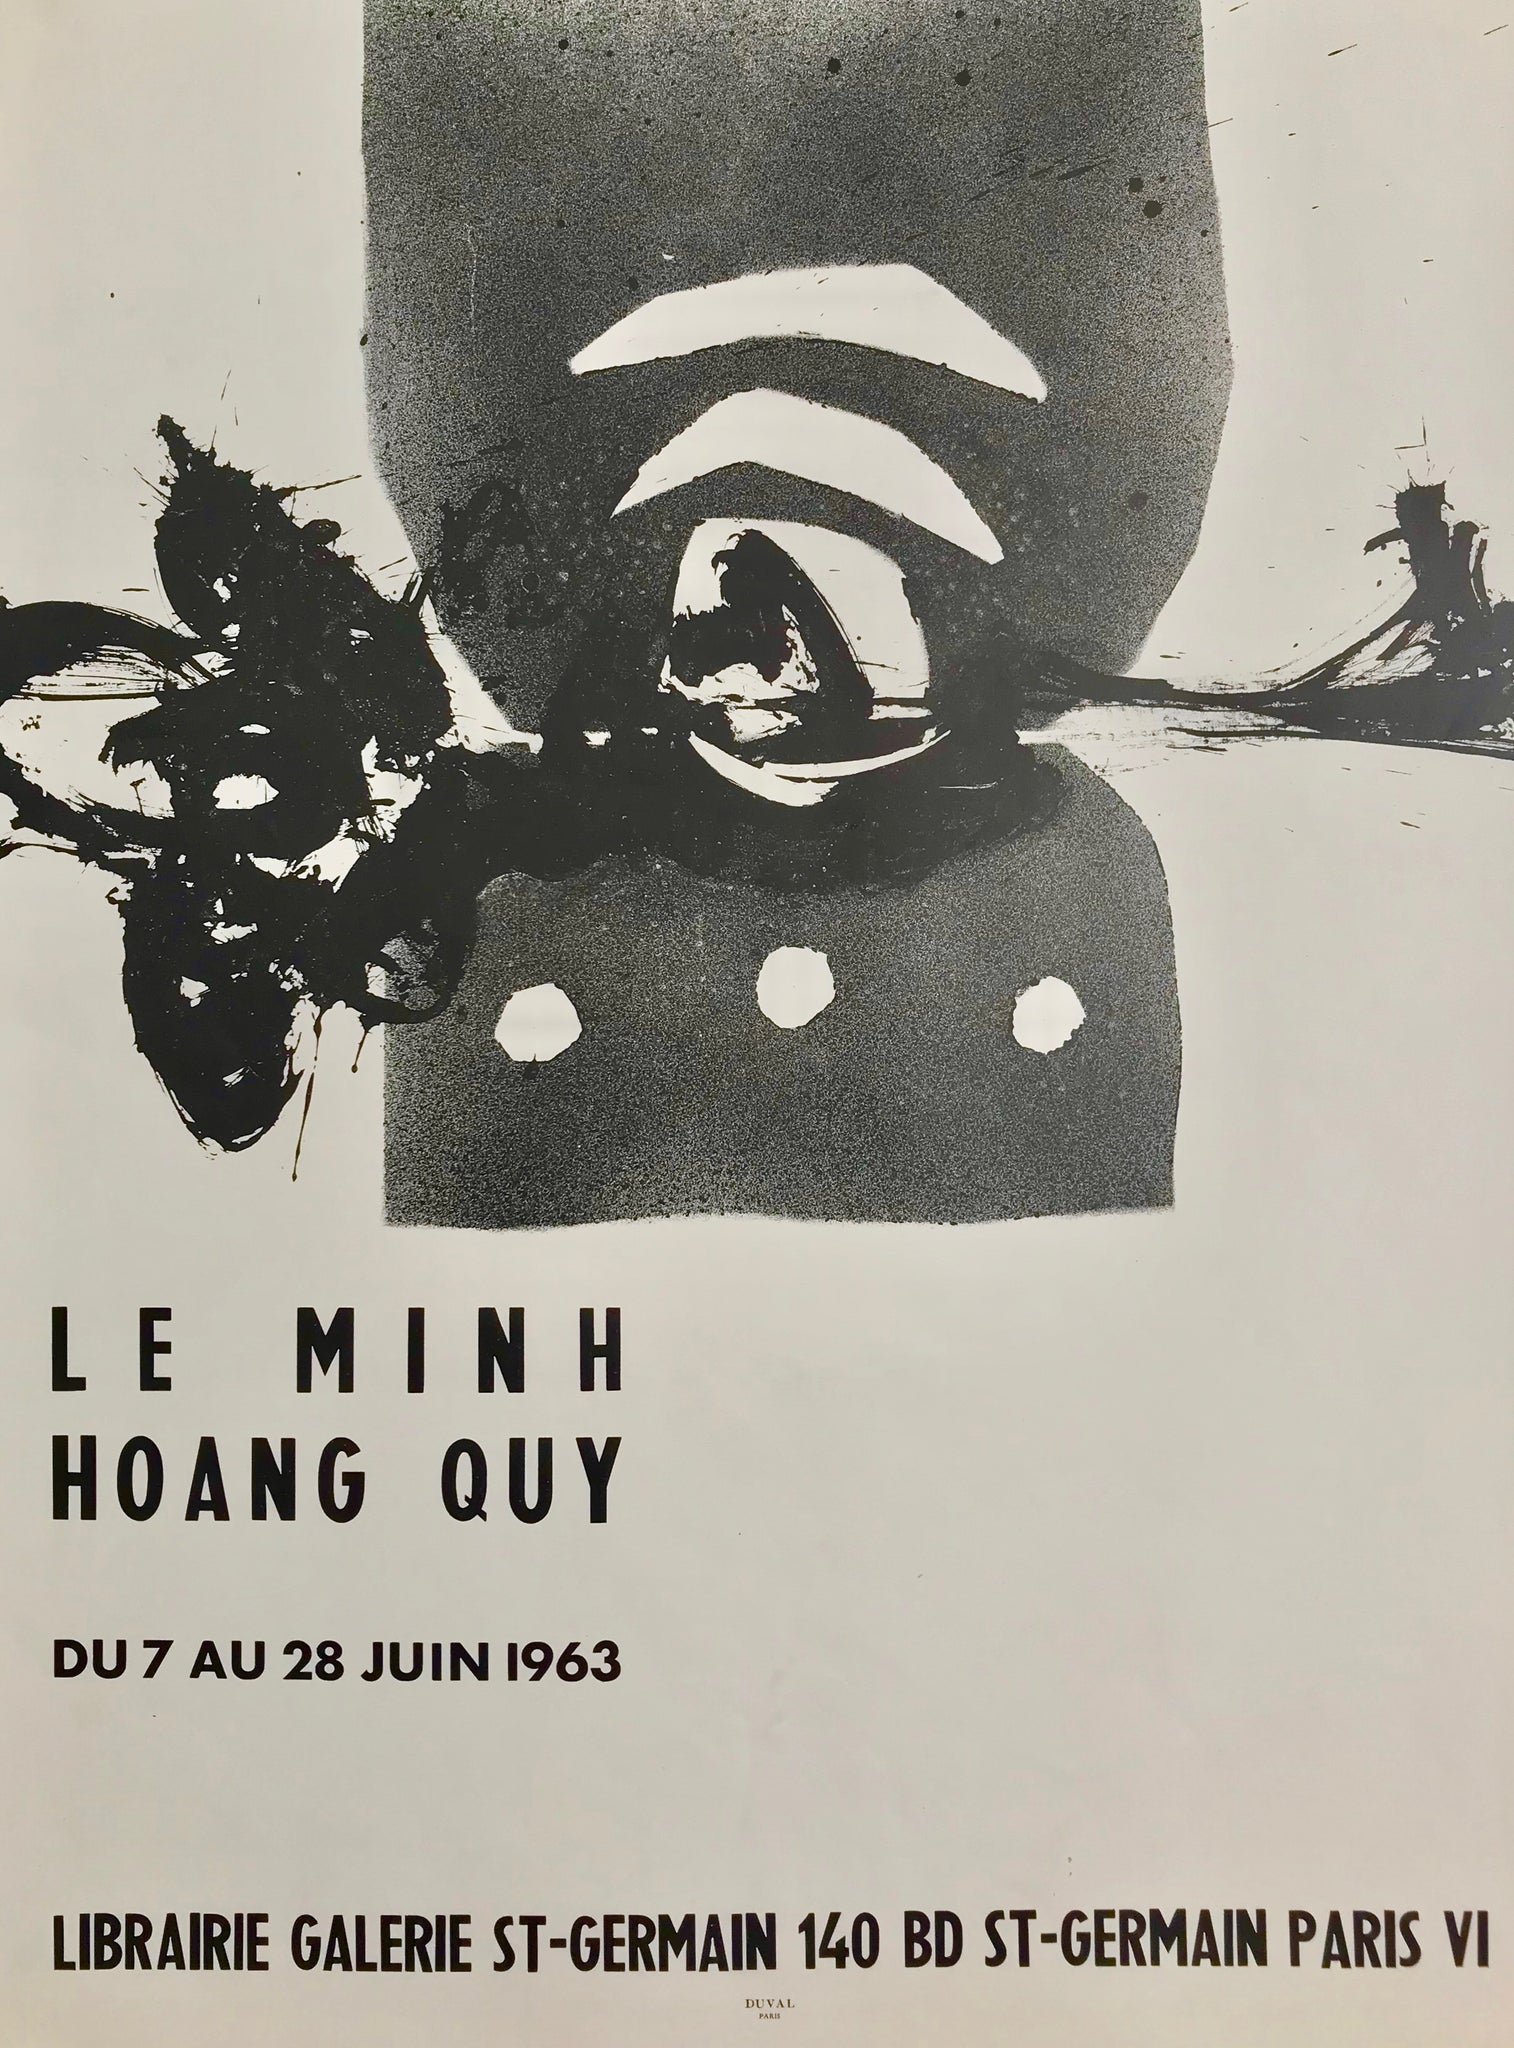 Affiche Galerie St Germain Par Minh Hoang Quy, 1963        Affche d'exposition pour le Minh Hoang Quy, librairie-galerie St Germain,  du 7 au 28 juin 1963.